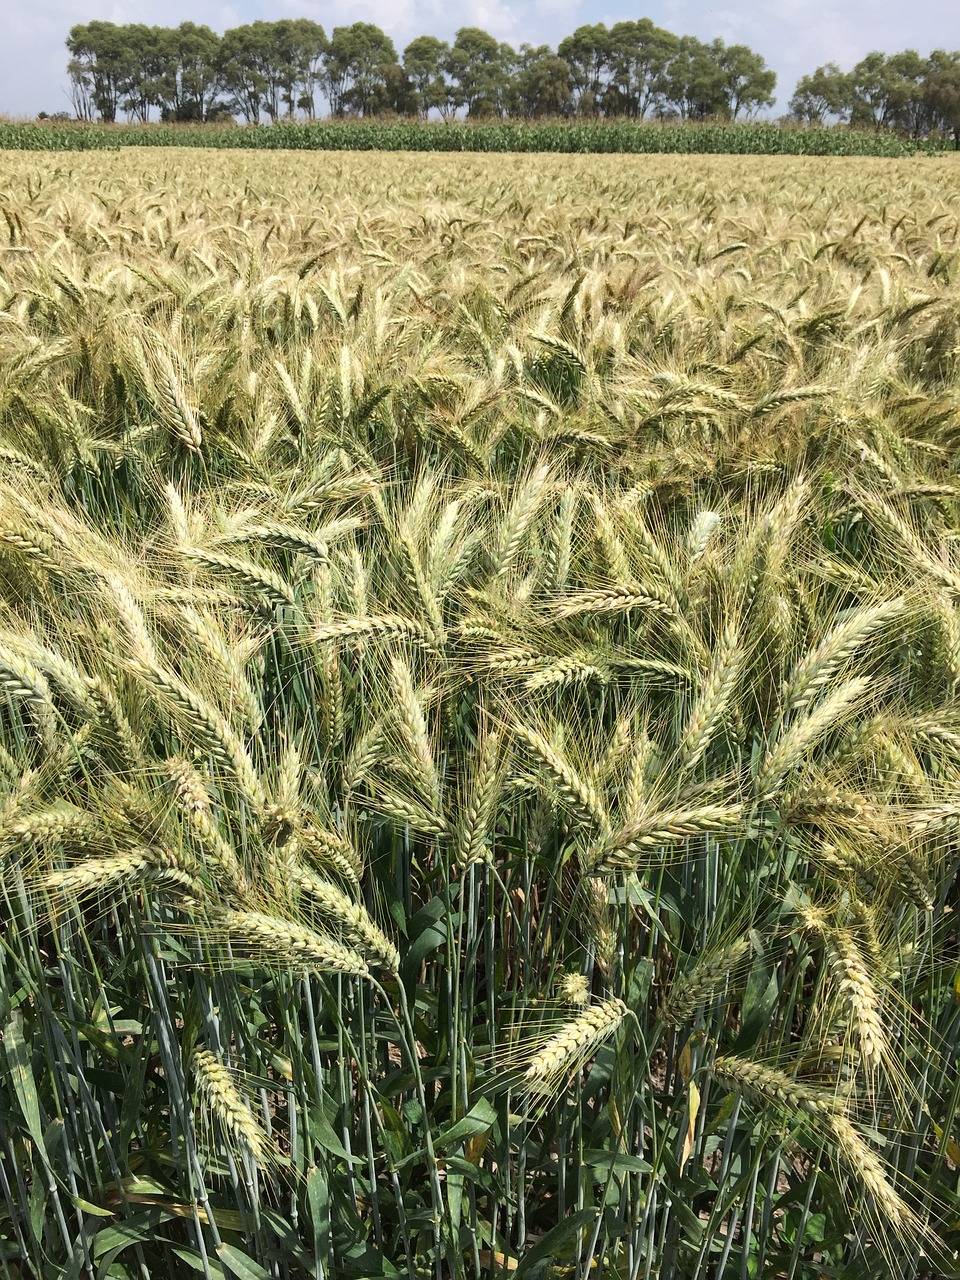 Las variedades locales de trigo suponen un reservorio de variabilidad genética natural.